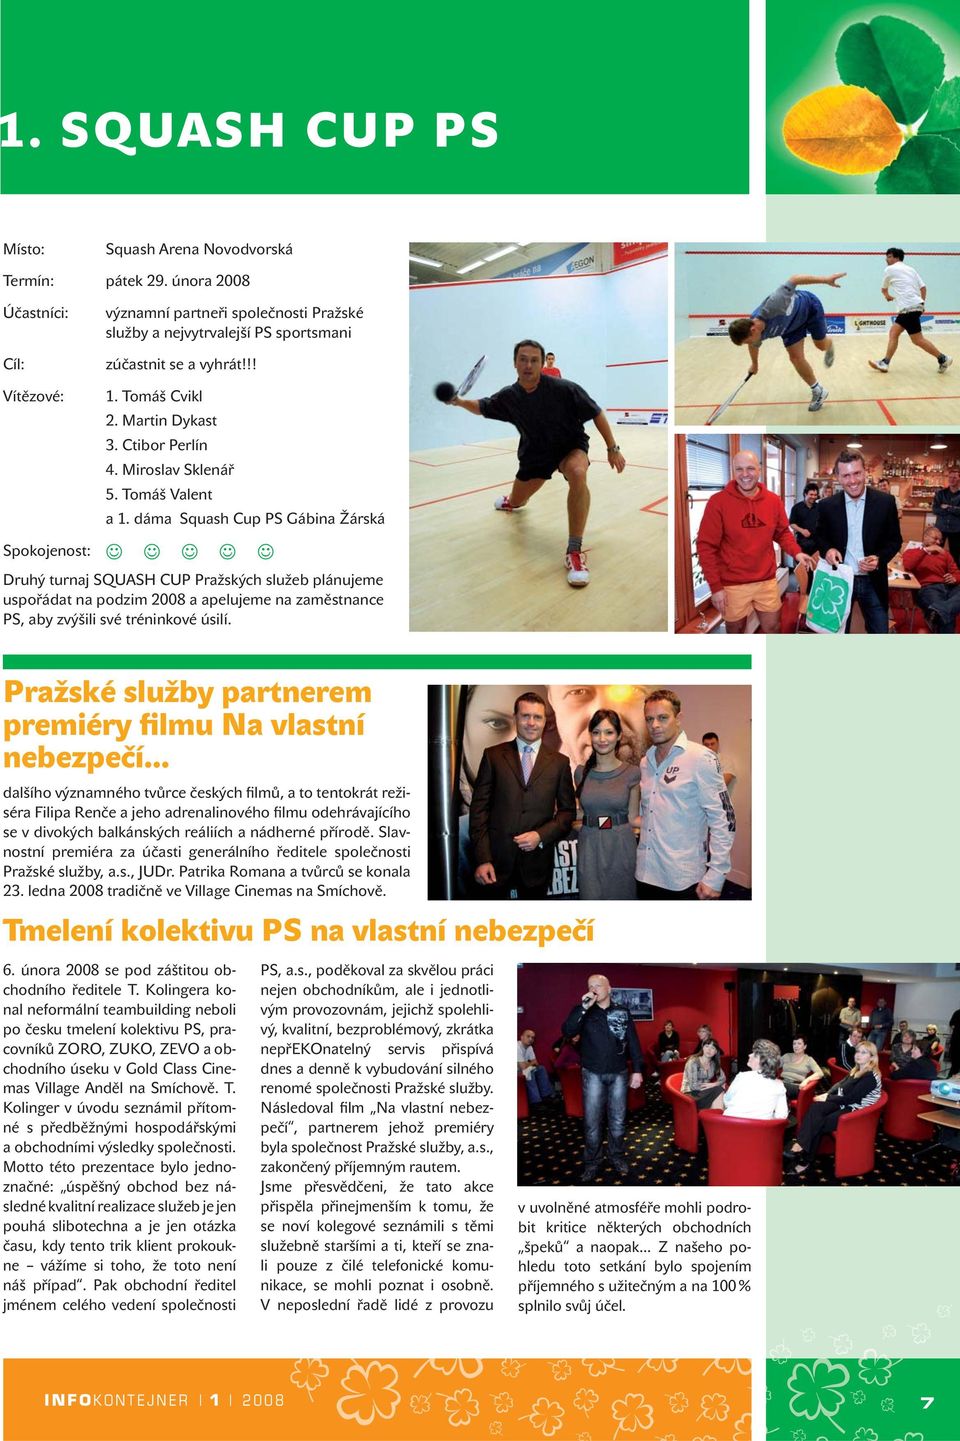 dáma Squash Cup PS Gábina Žárská Spokojenost: Druhý turnaj SQUASH CUP Pražských služeb plánujeme uspořádat na podzim 2008 a apelujeme na zaměstnance PS, aby zvýšili své tréninkové úsilí.